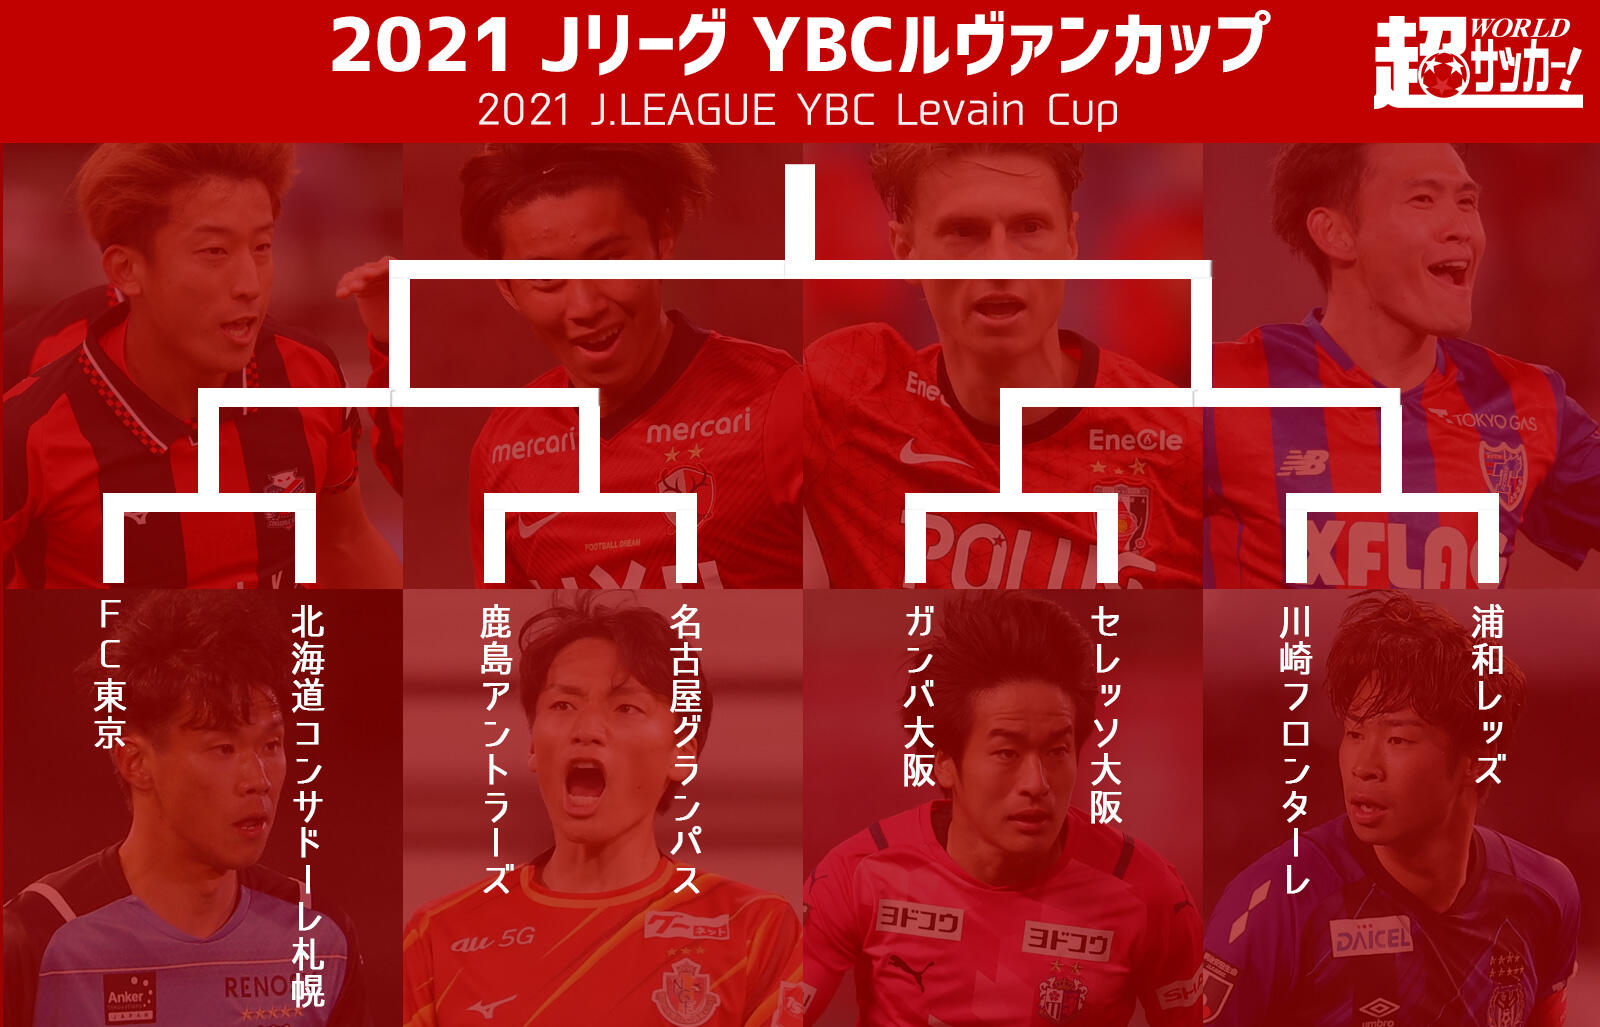 ルヴァンカップ準々決勝のキックオフ時間が決定 Fc東京vs札幌は湘南お本拠地で開催 超ワールドサッカー